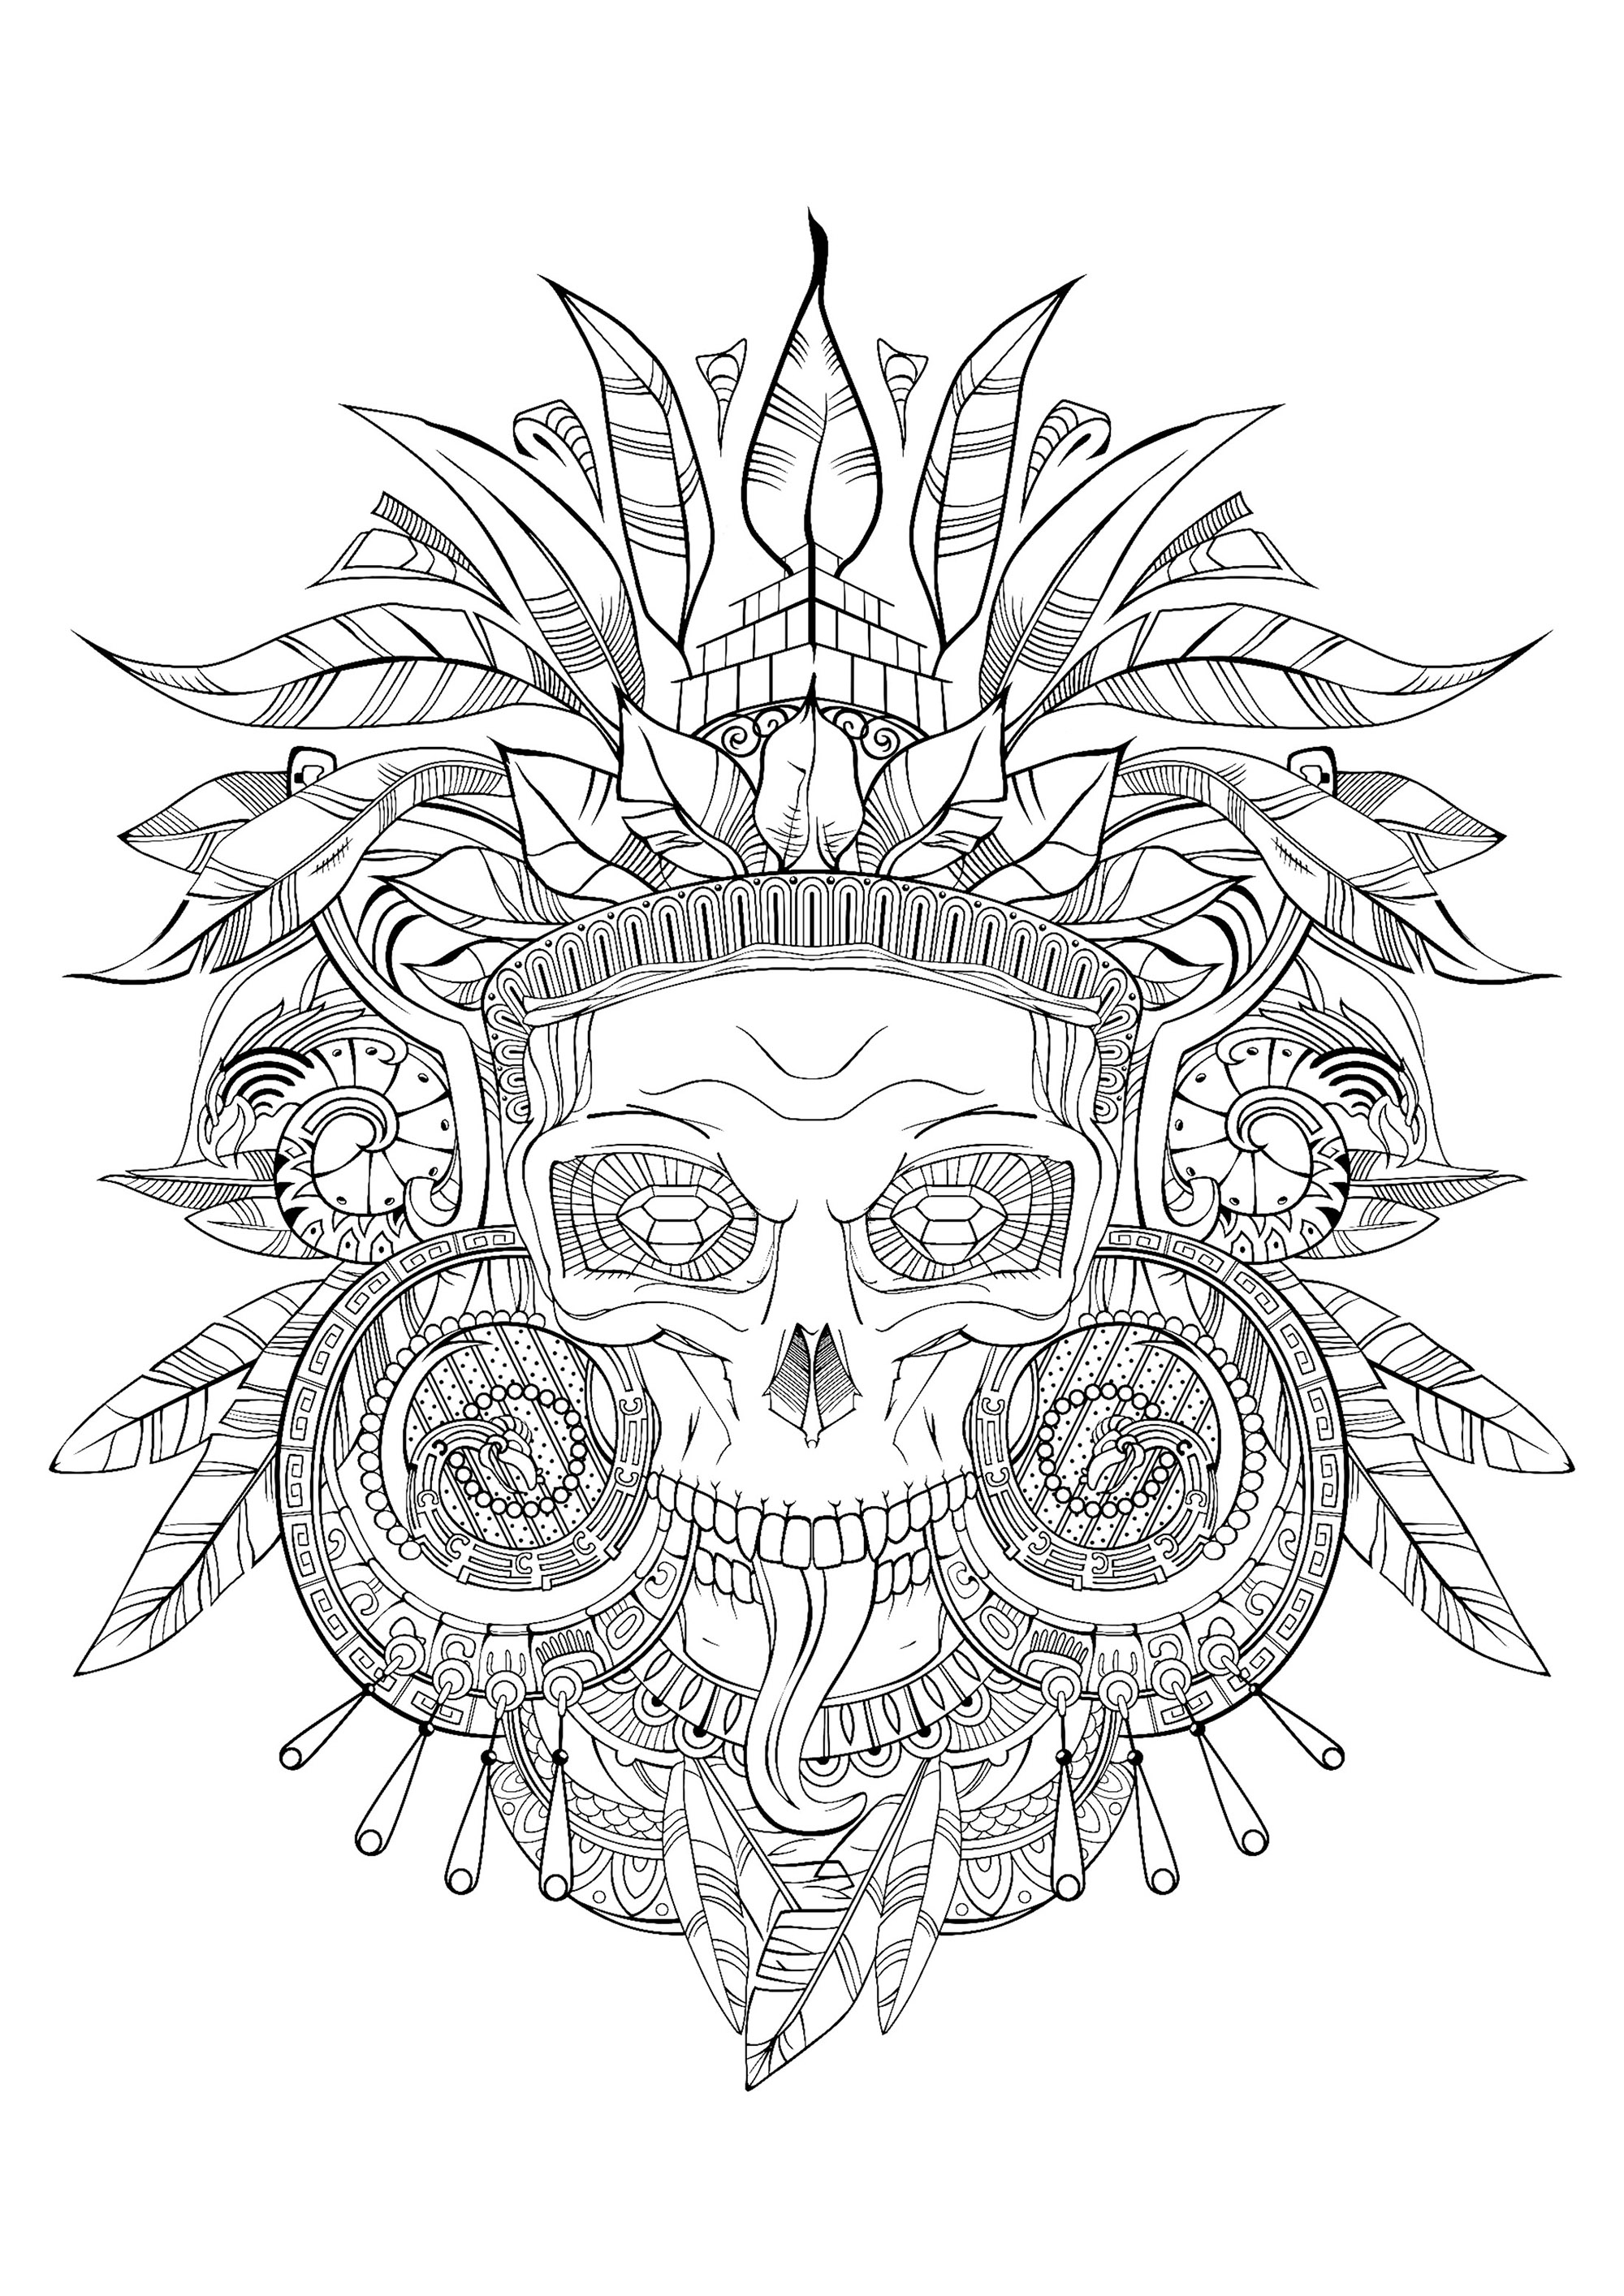 Desenhos grátis para colorir de Maias, astecas e incas para imprimir e colorir, Fonte : 123rf   Artista : redspruce